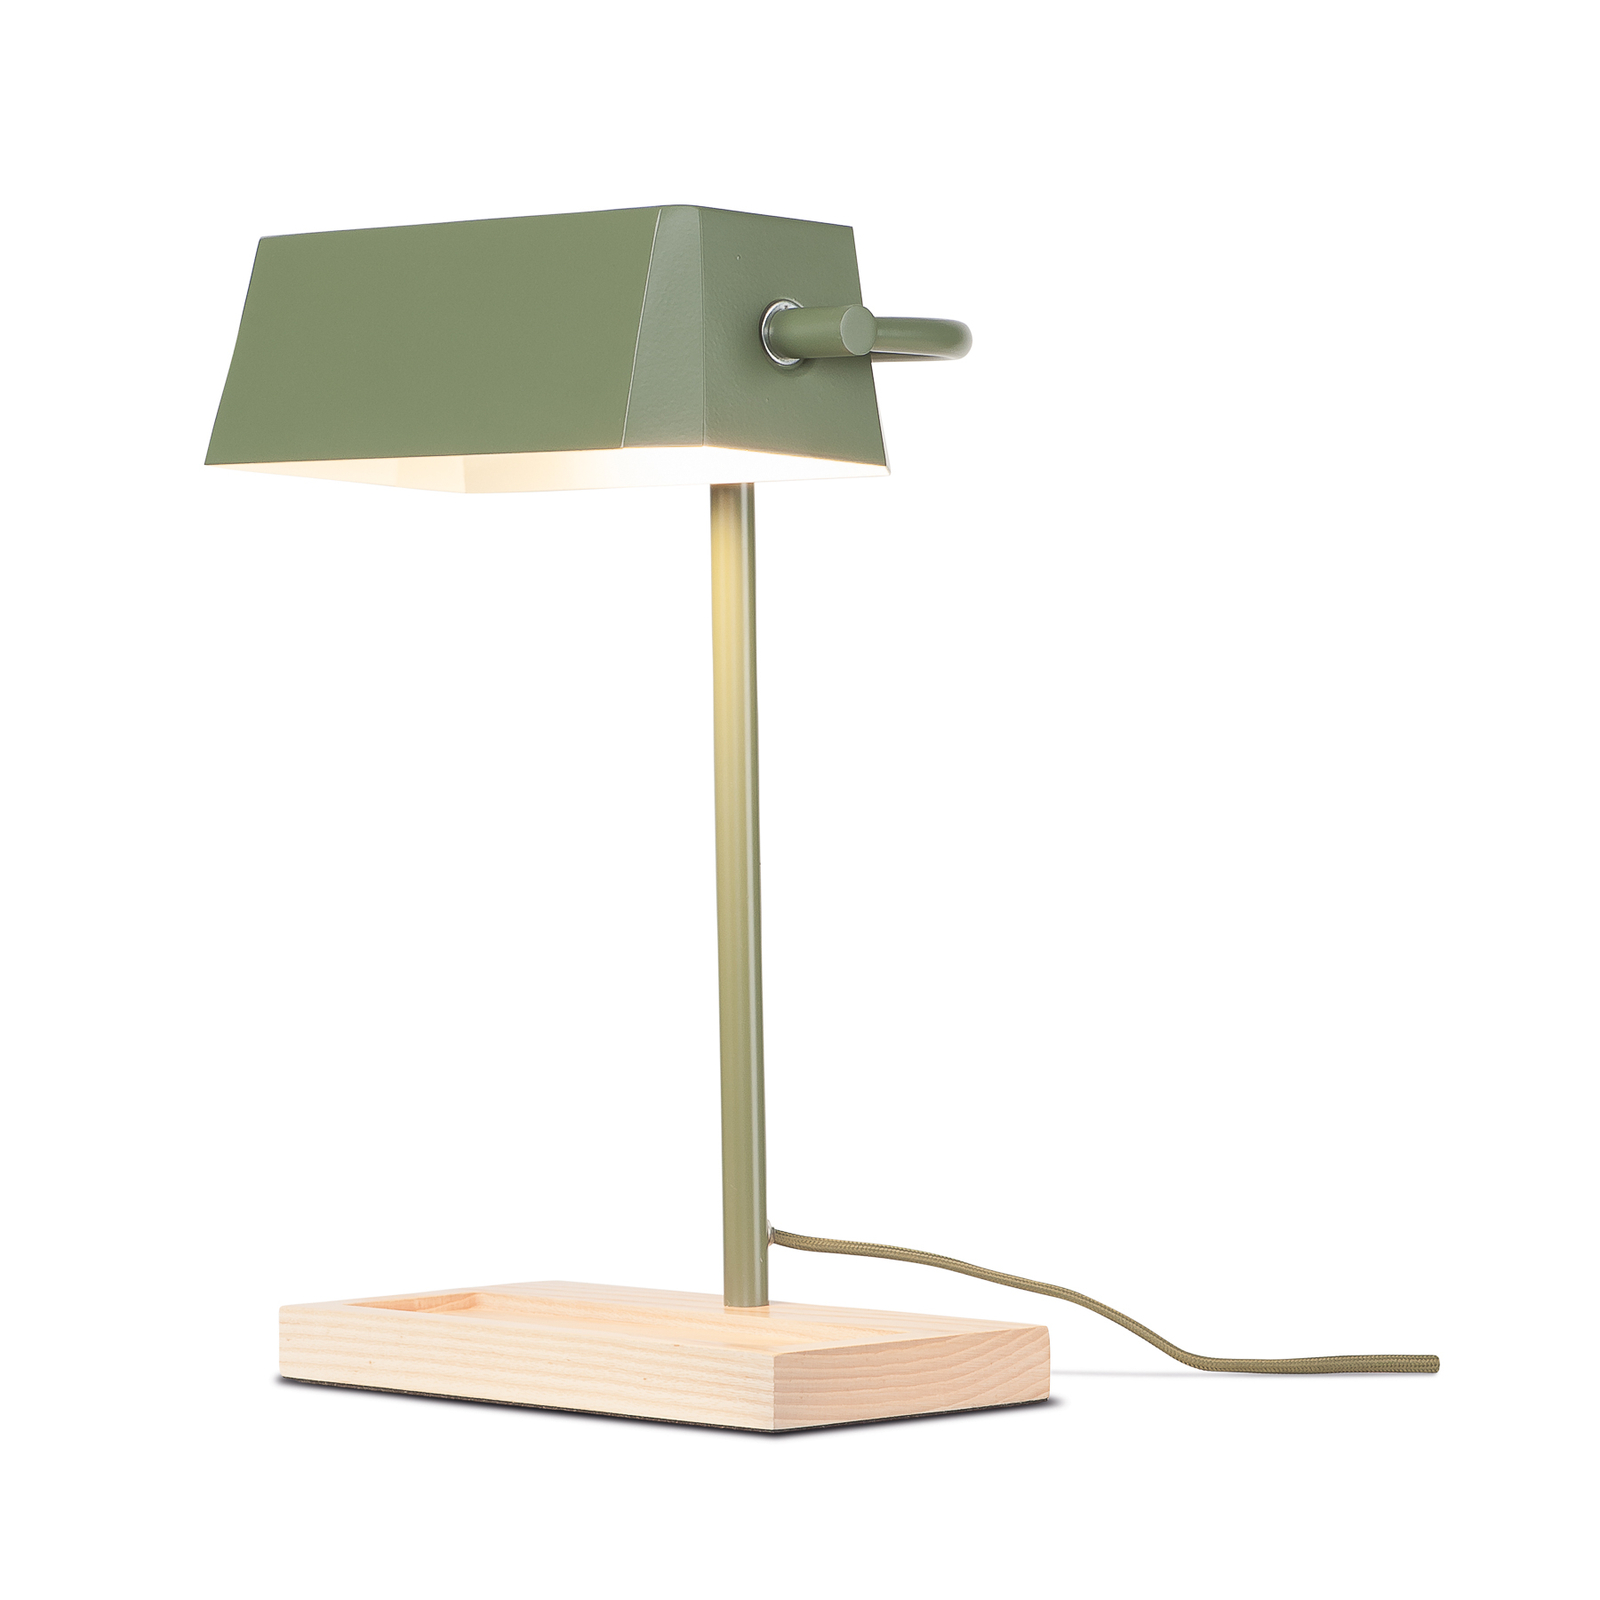 Det handlar om RoMi Cambridge bordslampa, olivgrön